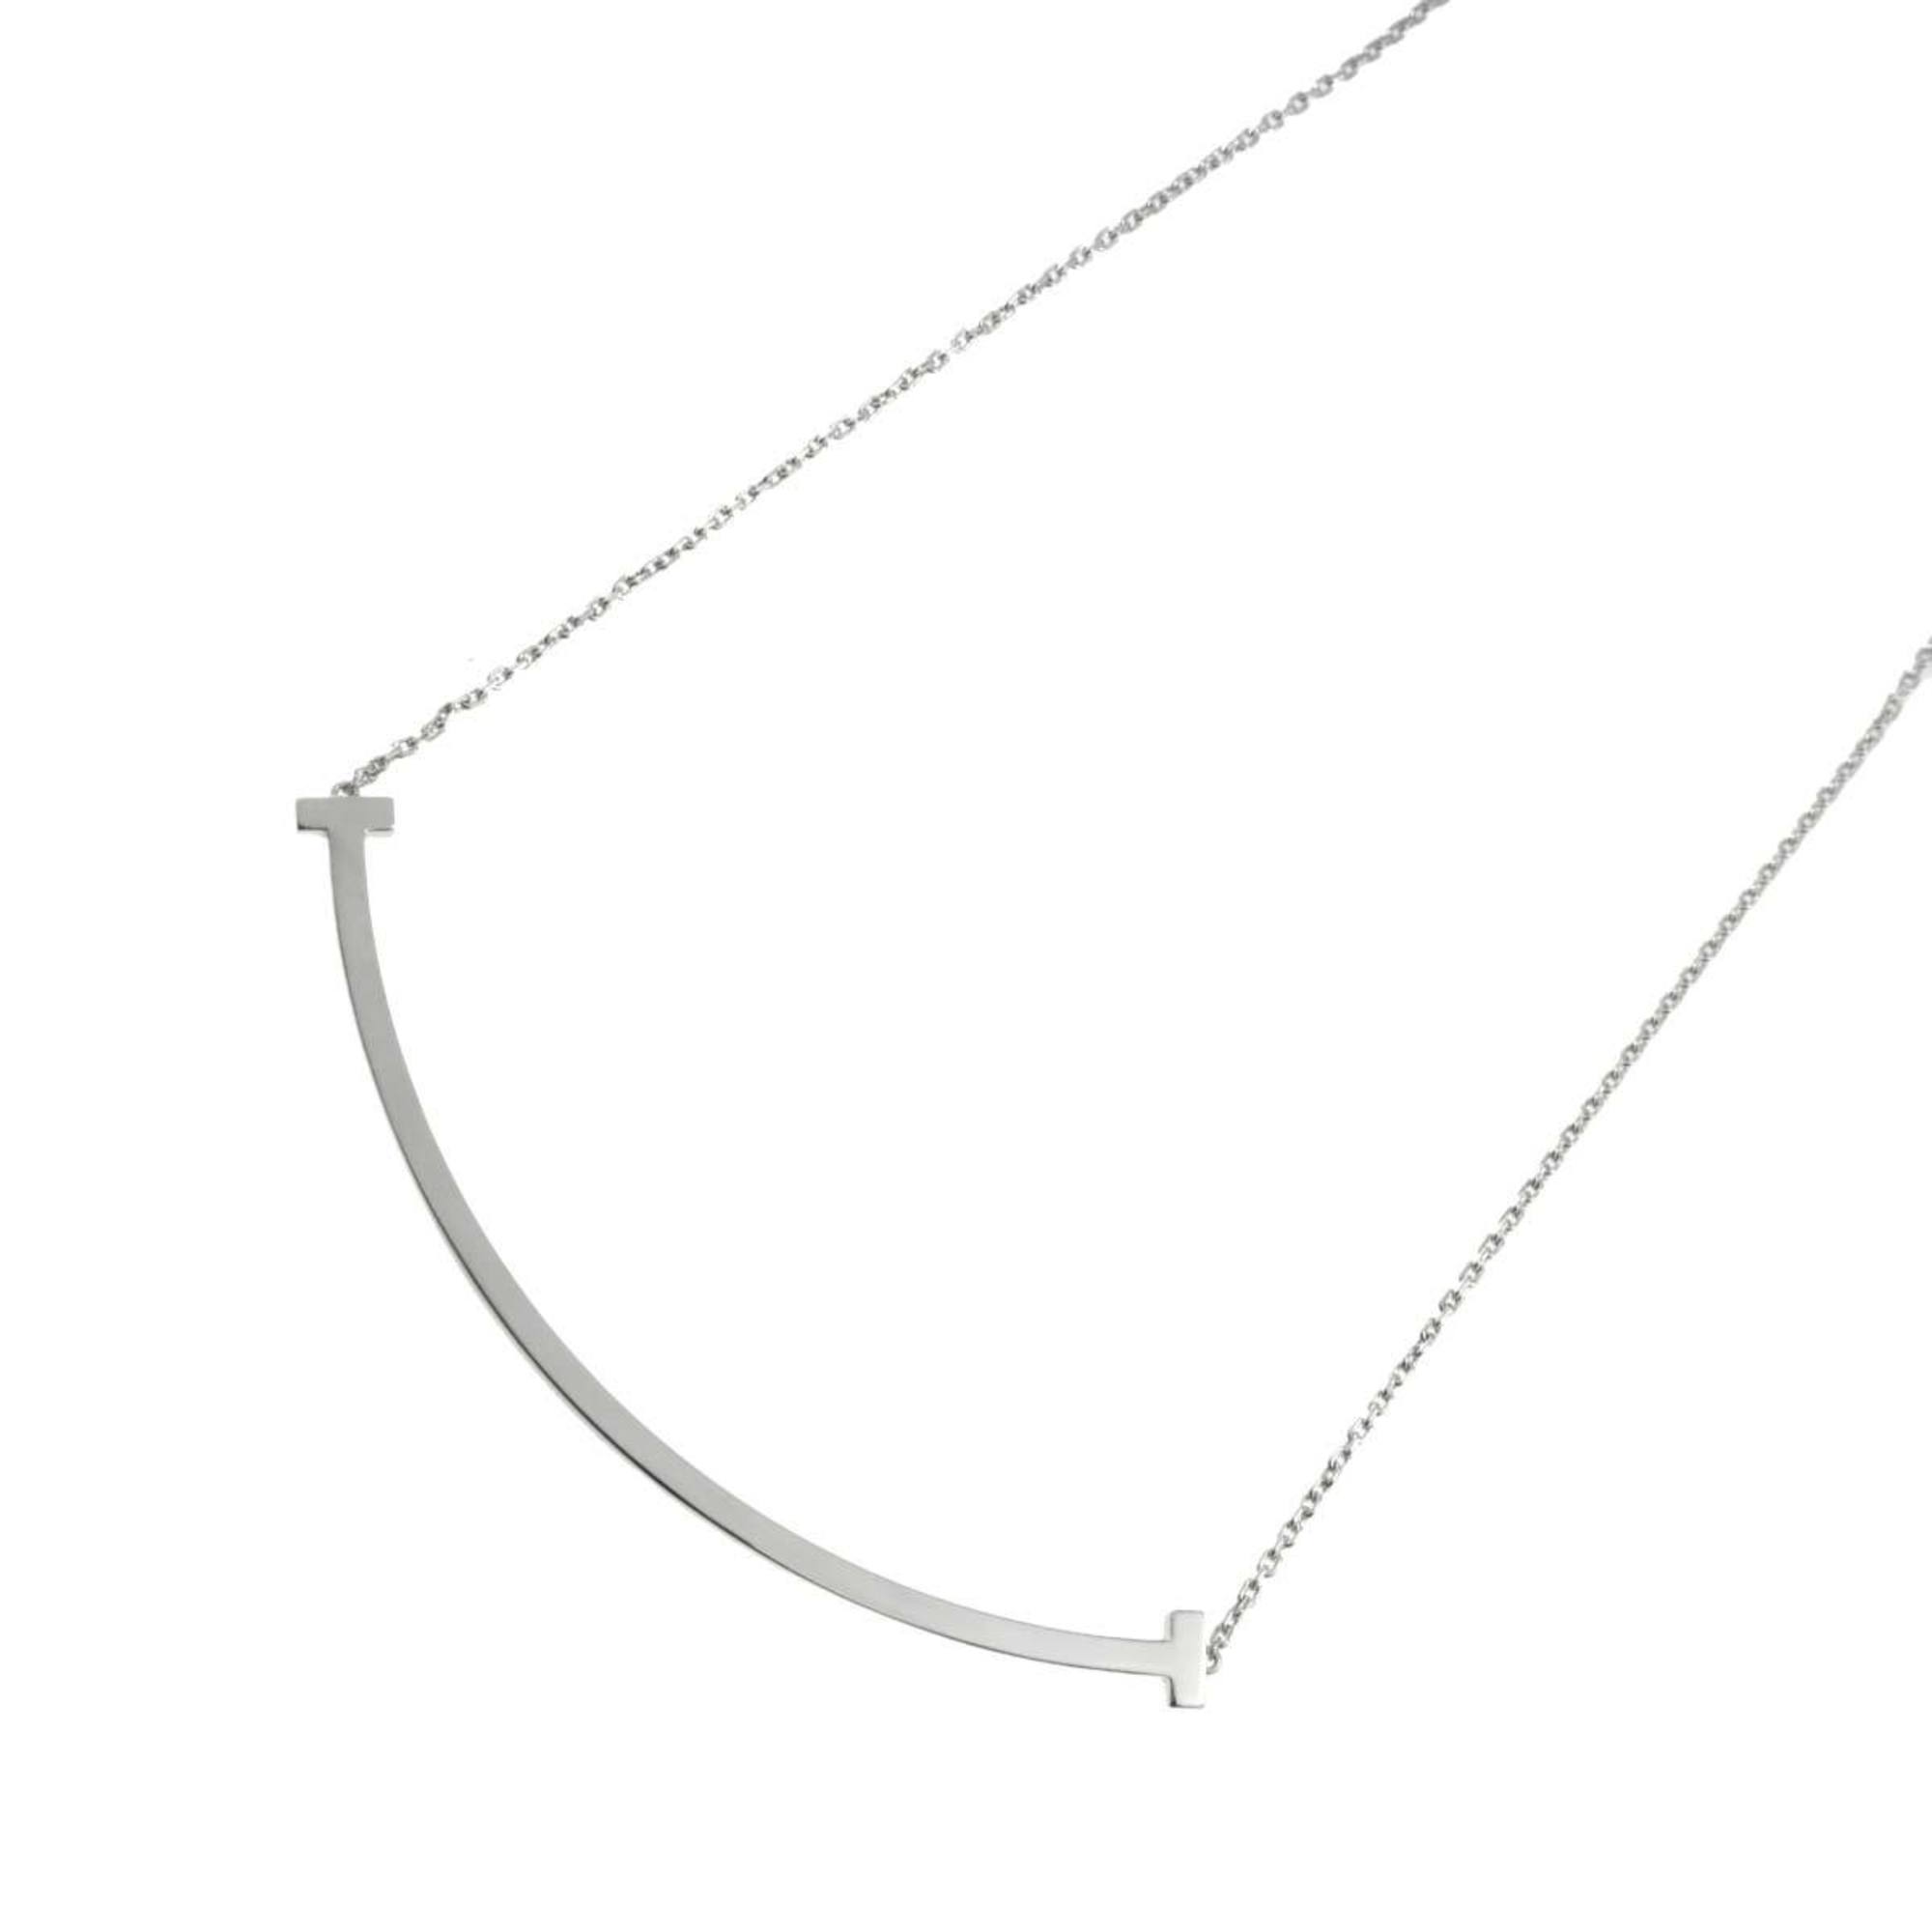 Tiffany TIFFANY&Co. T Smile Necklace 46cm Extra Large K18 WG White Gold 750